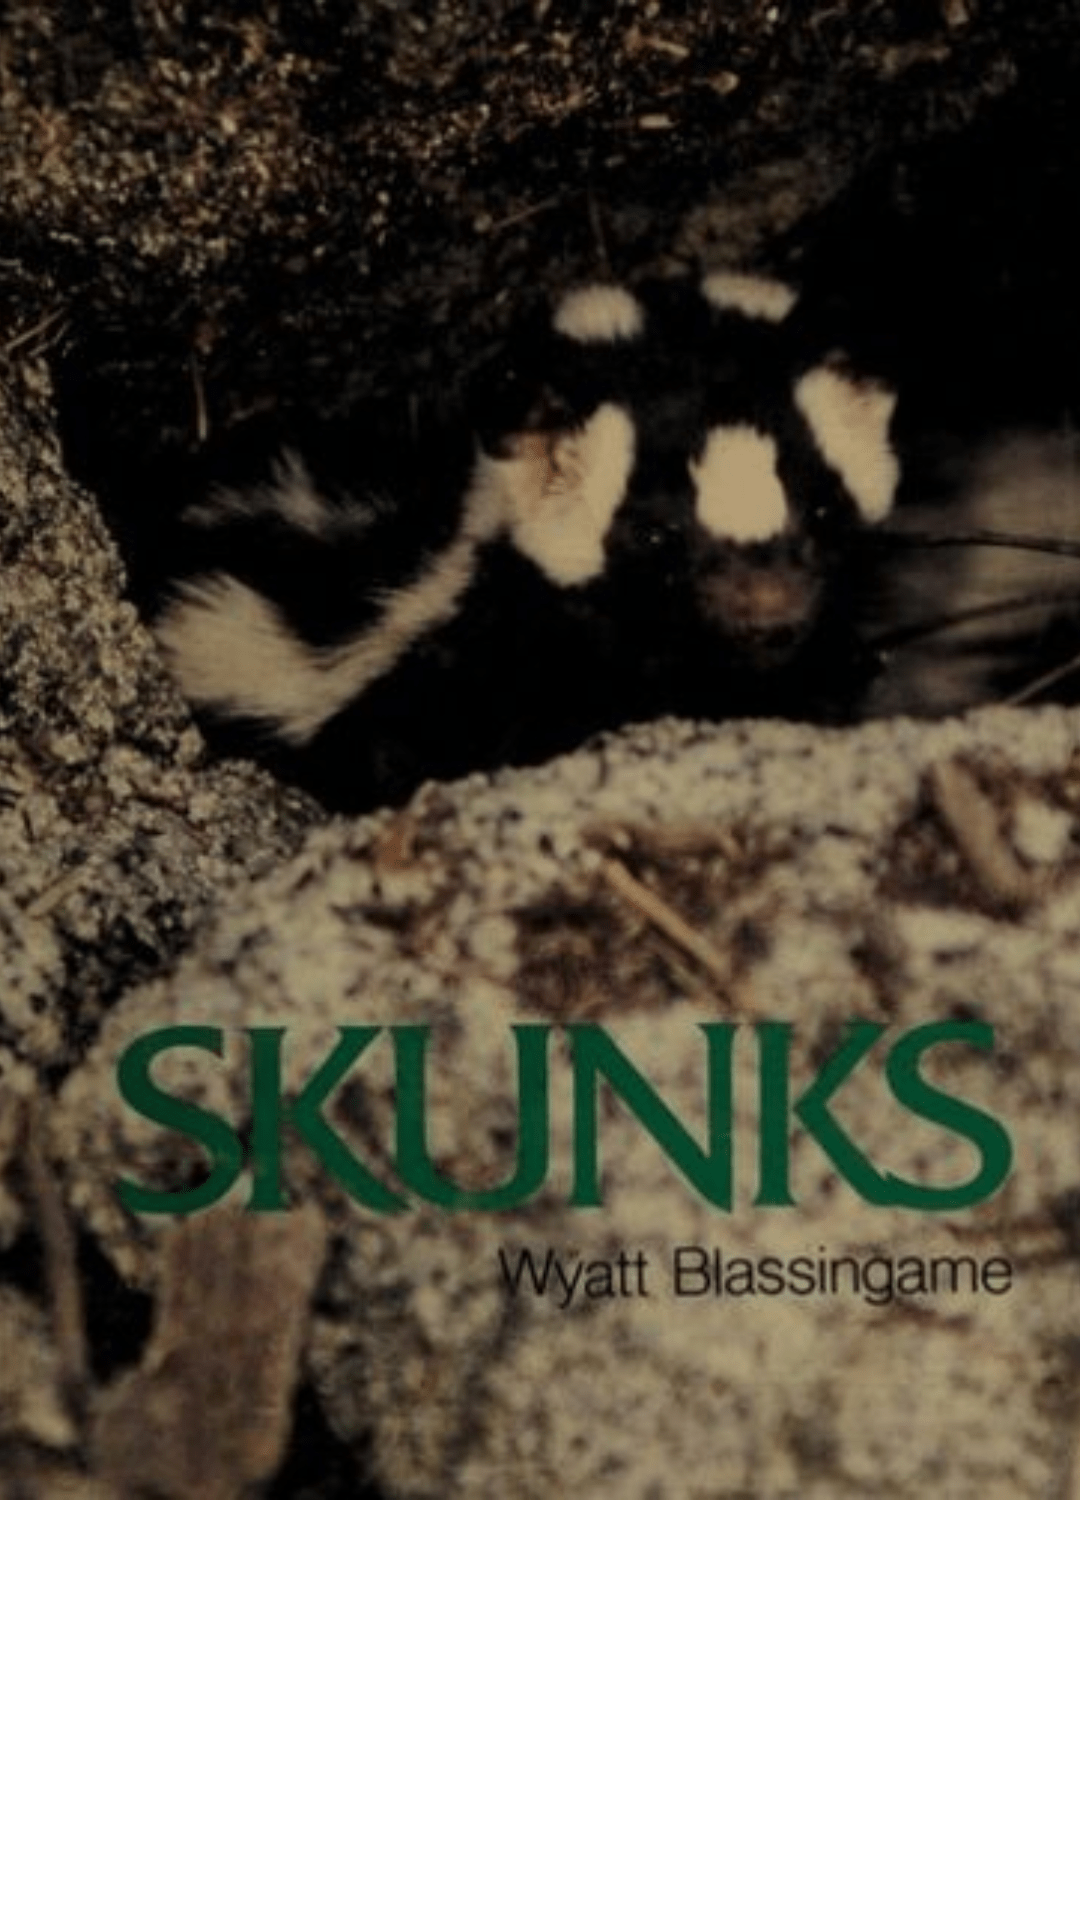 Skunks by Wyatt Blassingame